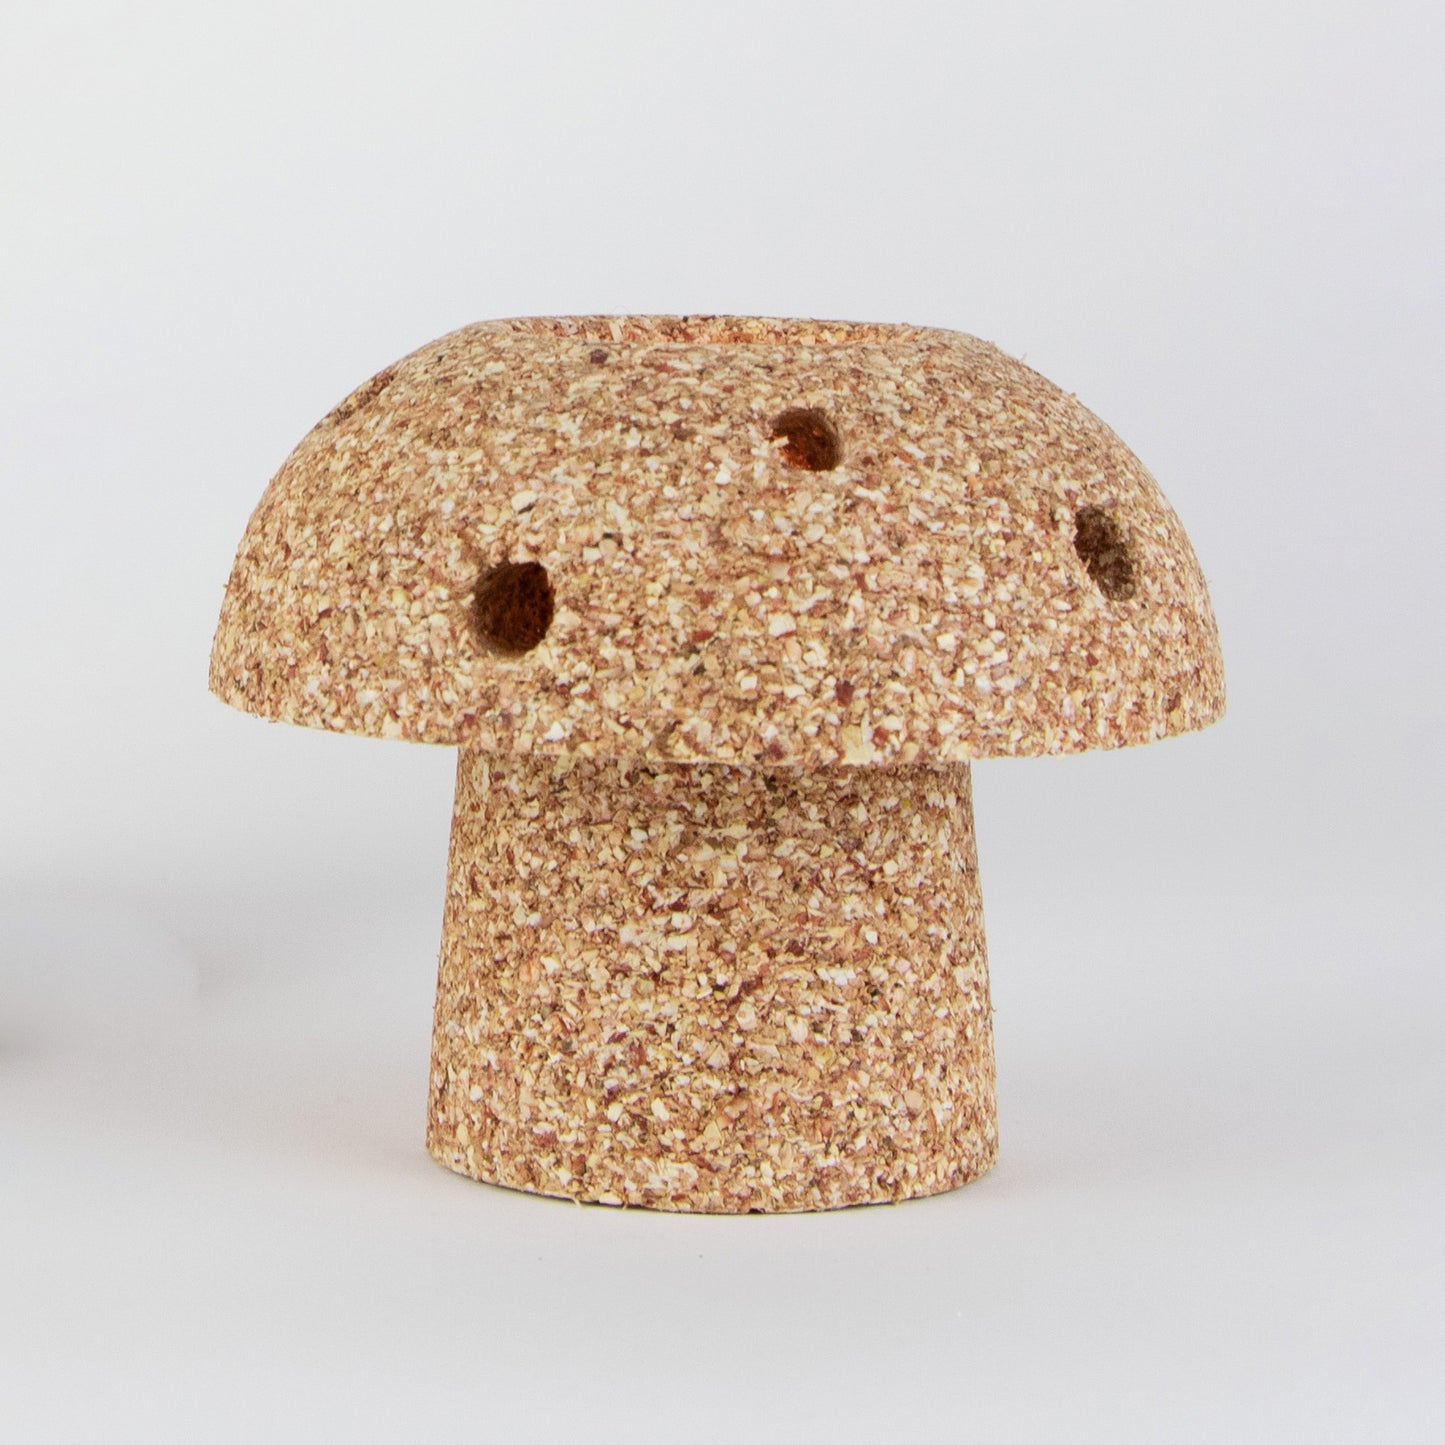 Re:create Mushroom Corn Tea Light